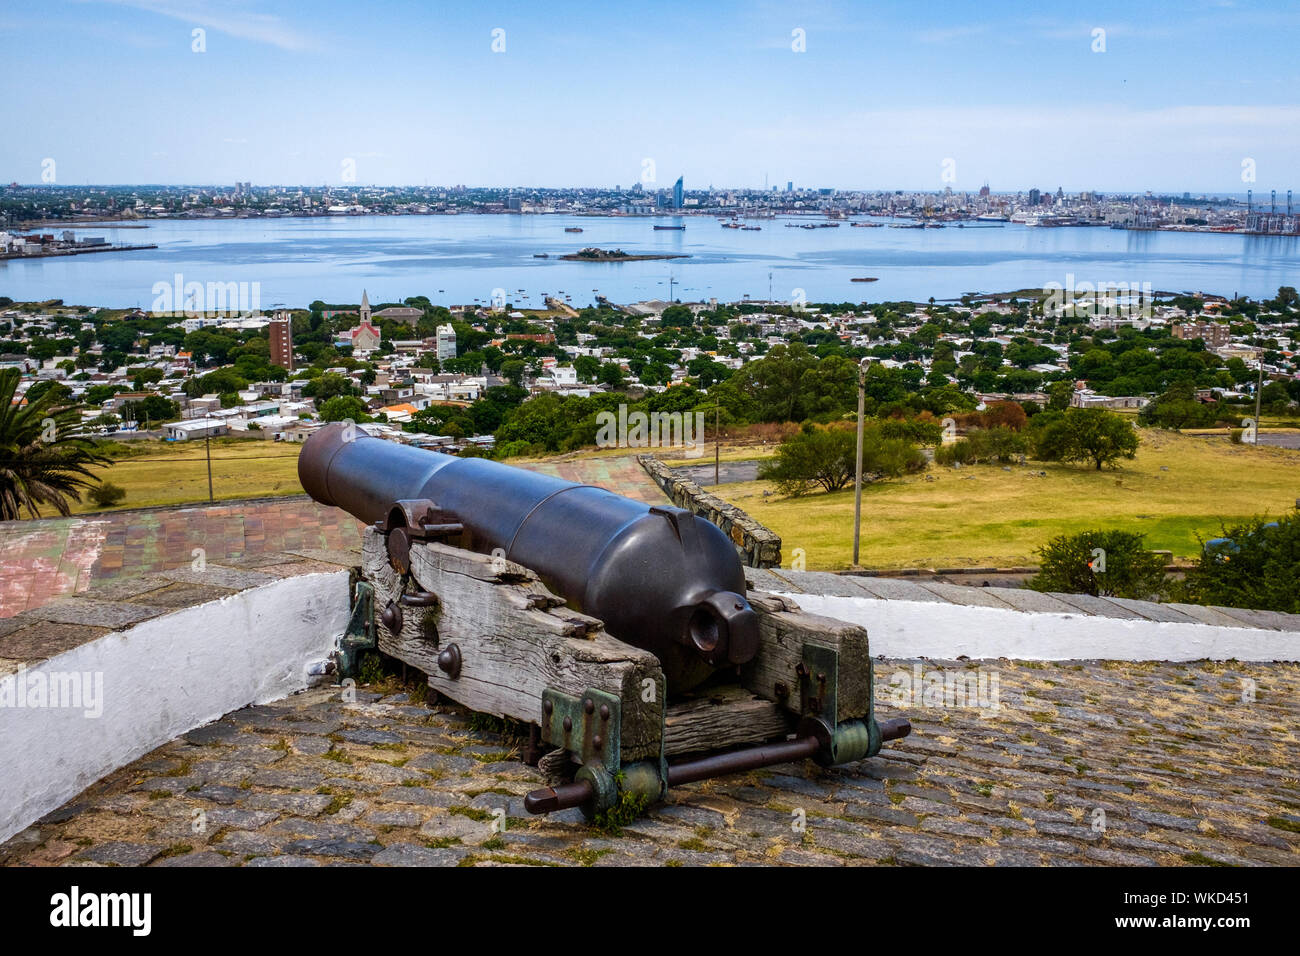 Uruguay, Montevideo: Il Cerro fortezza o general artigas Fortezza (Fortaleza general artigas) che sovrasta la baia di Montevideo, sede di un museo wi Foto Stock